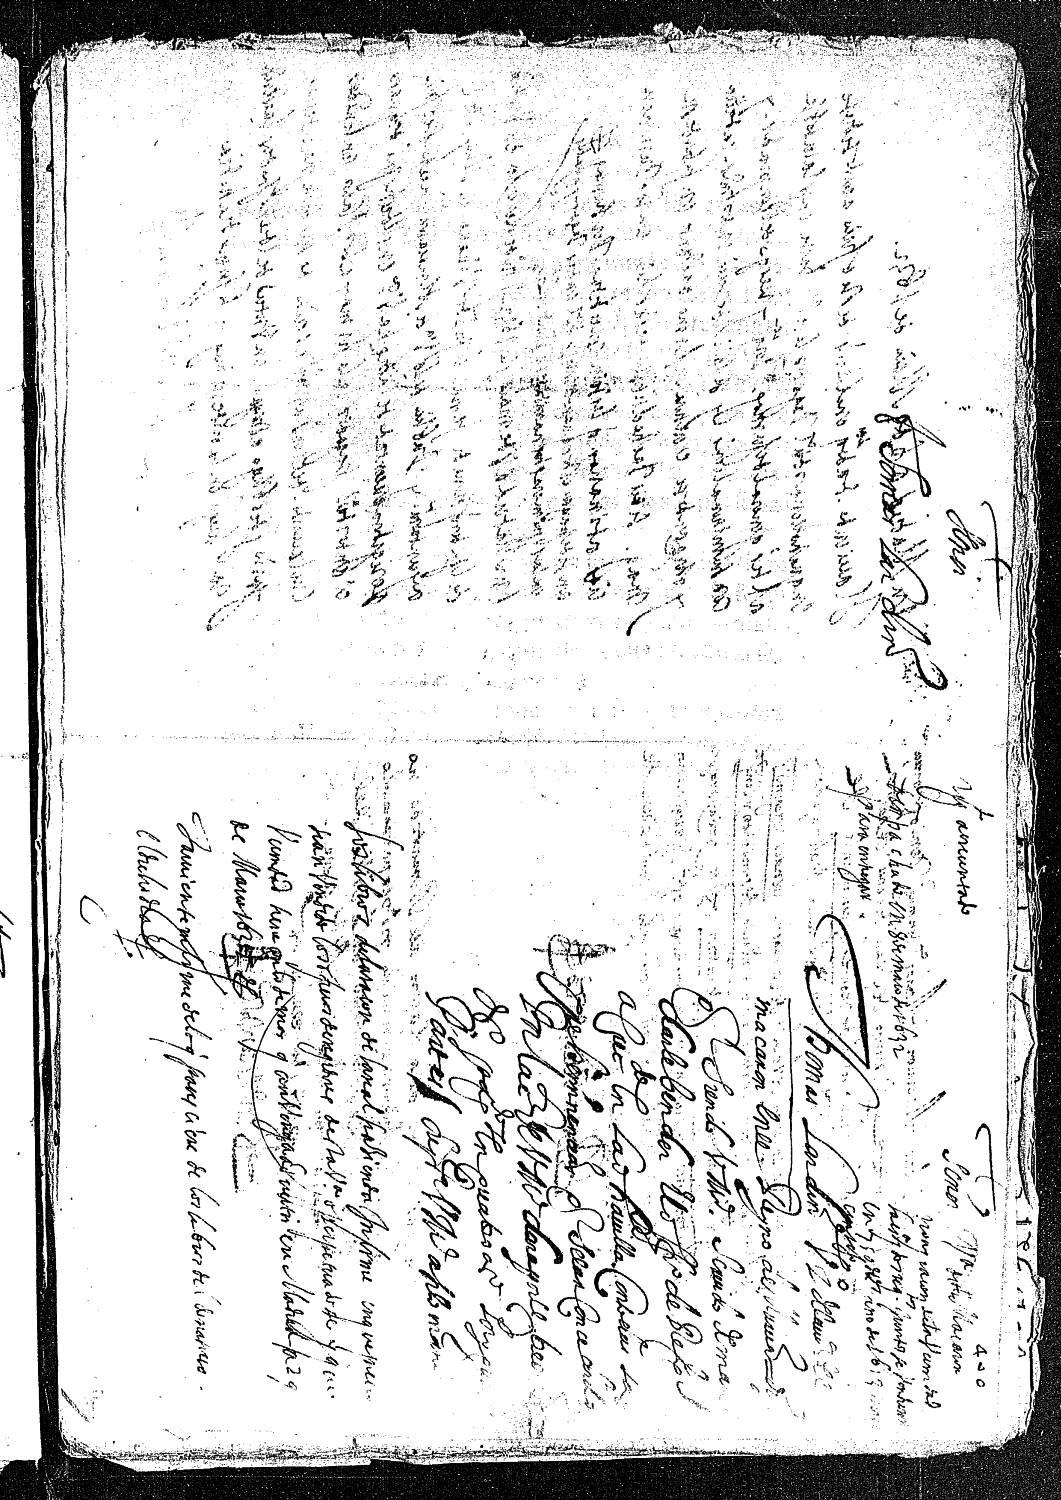 Petición de Tomás Lardín, vecino de Mazarrón, solicitando al rey el oficio de regidor acrecentado de Mazarrón y por el que ofrece 300 ducados.